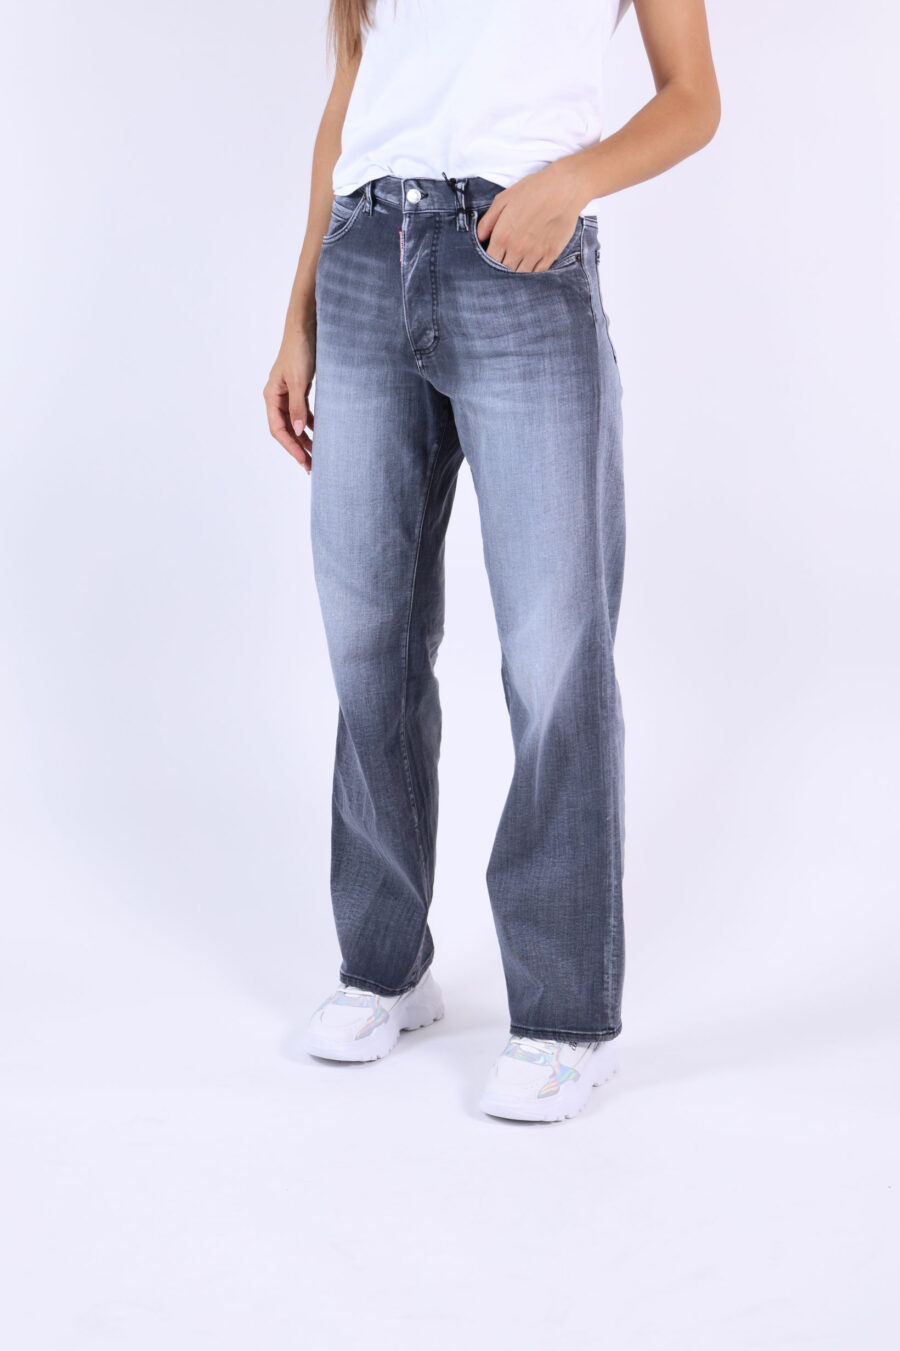 Jeans "San Diego jean" schwarz getragen - 361223054662201938 1